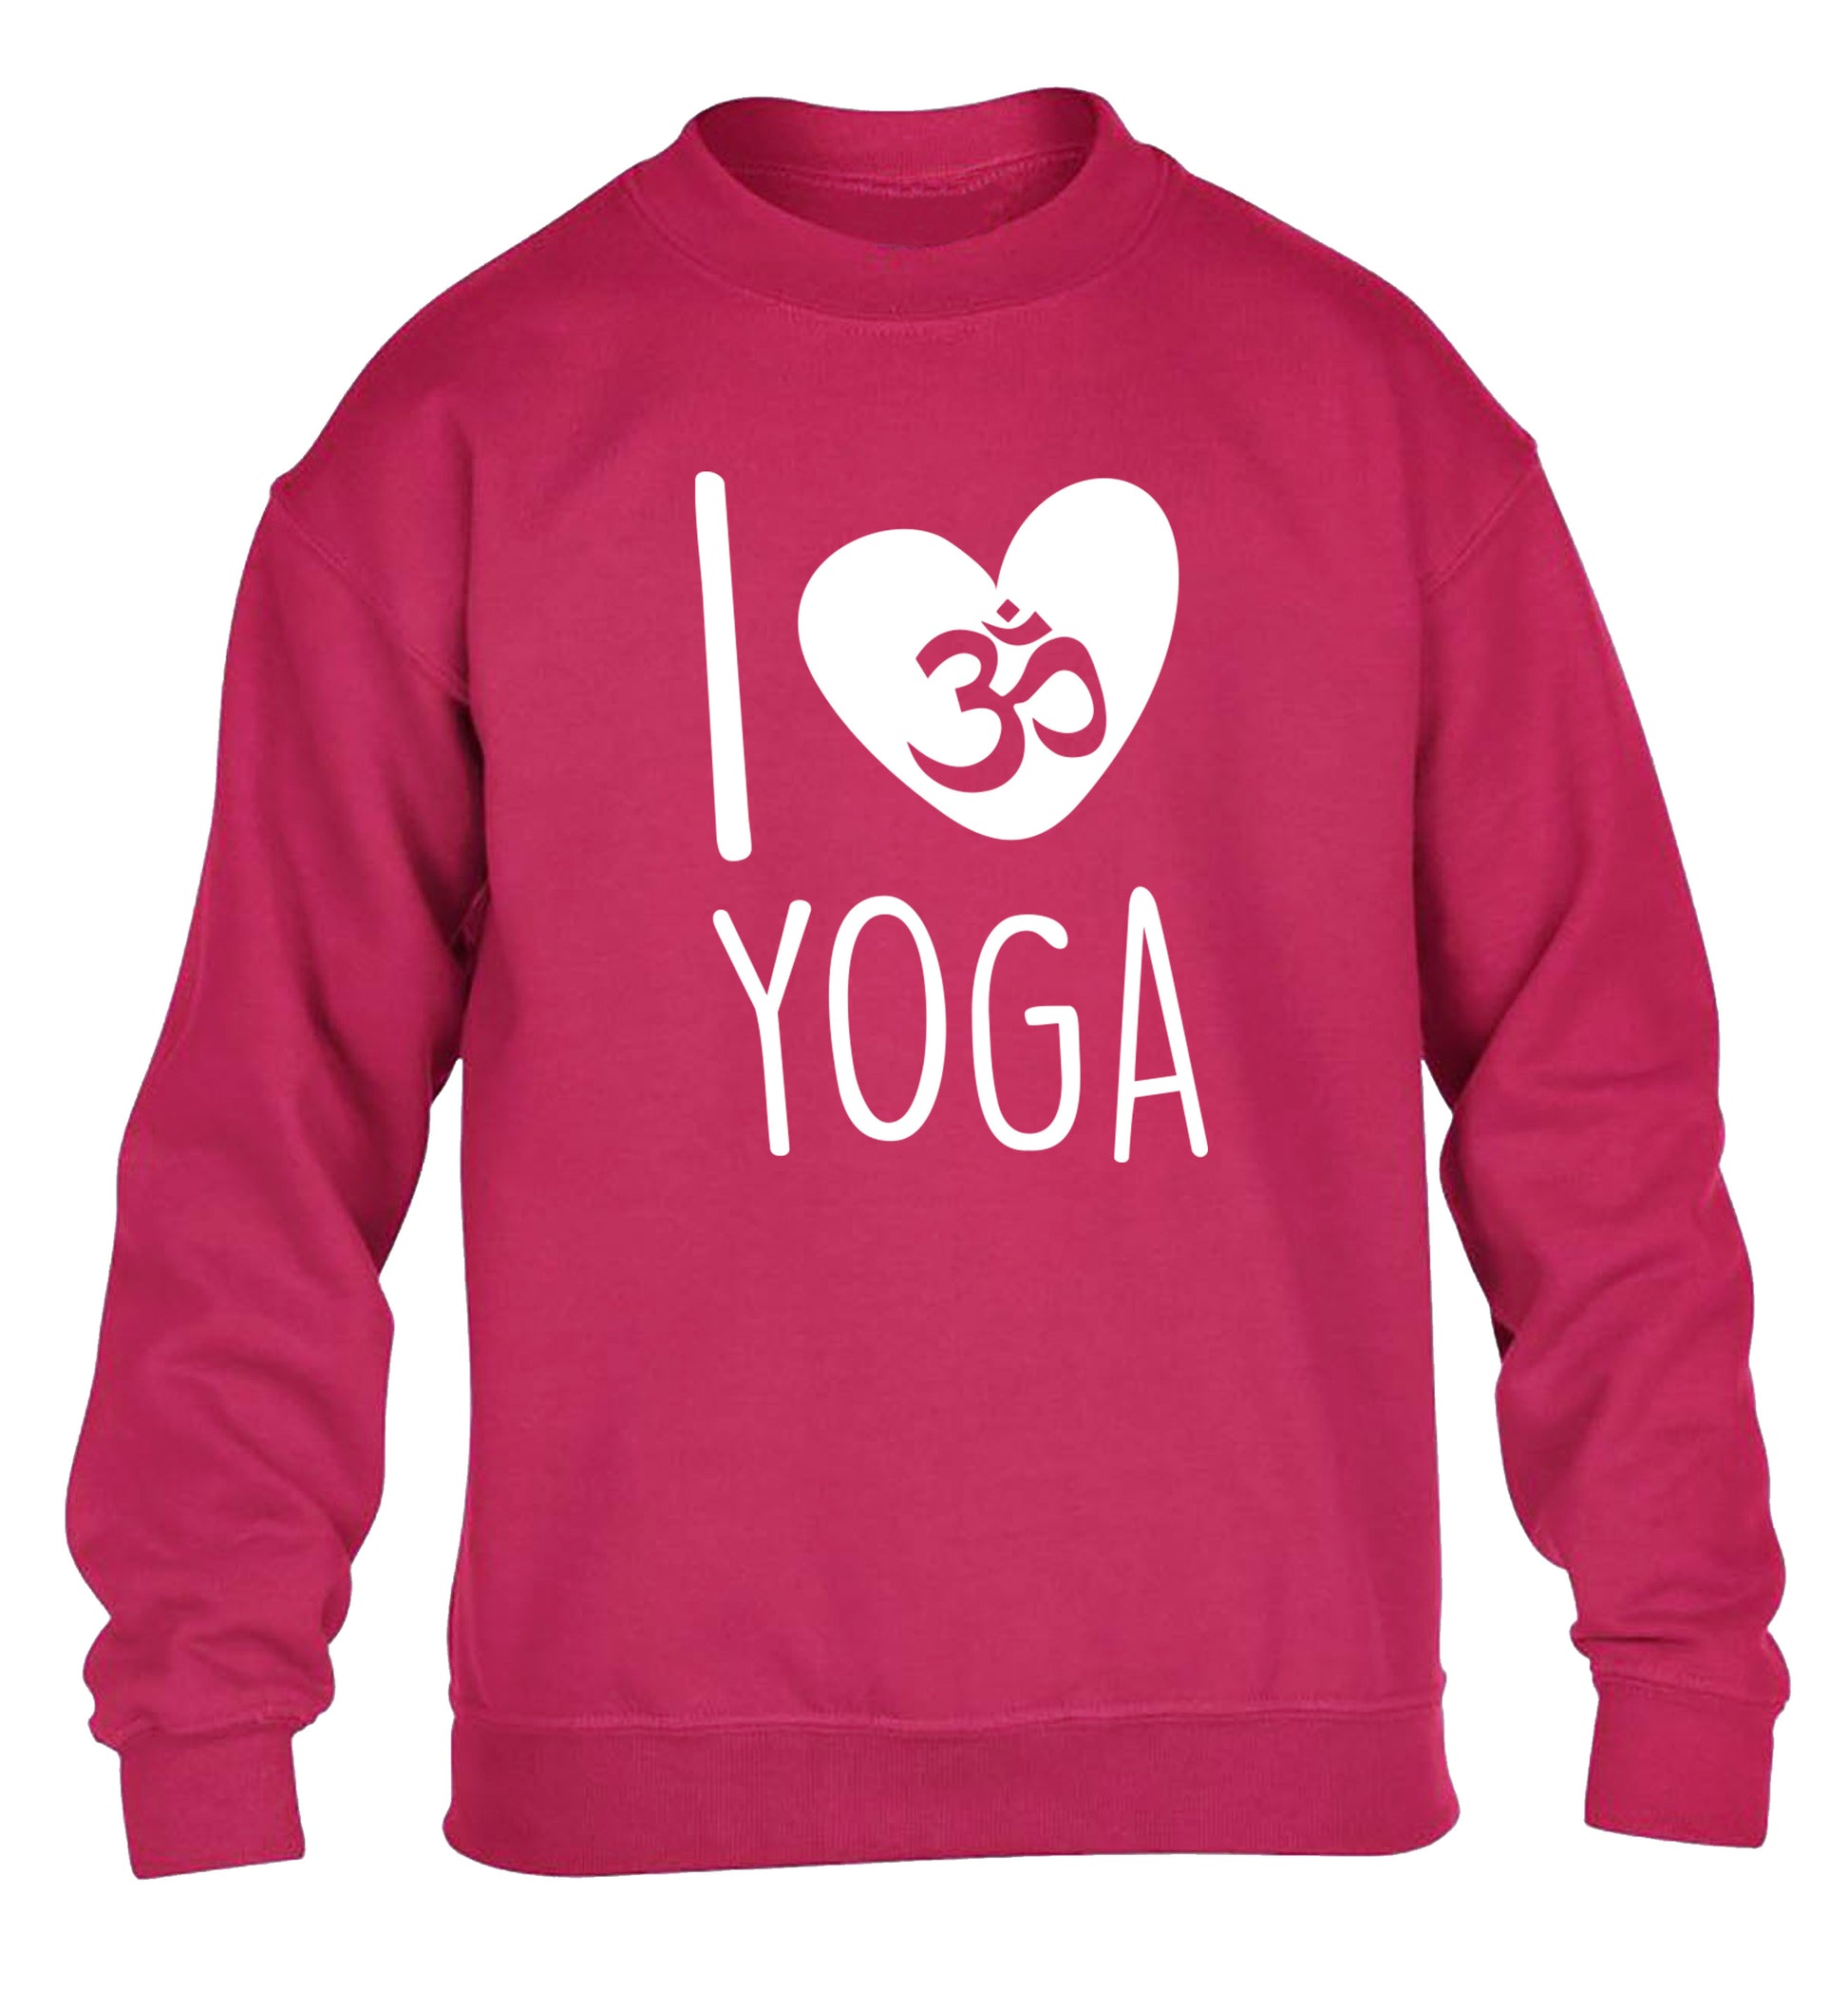 I love yoga children's pink sweater 12-13 Years